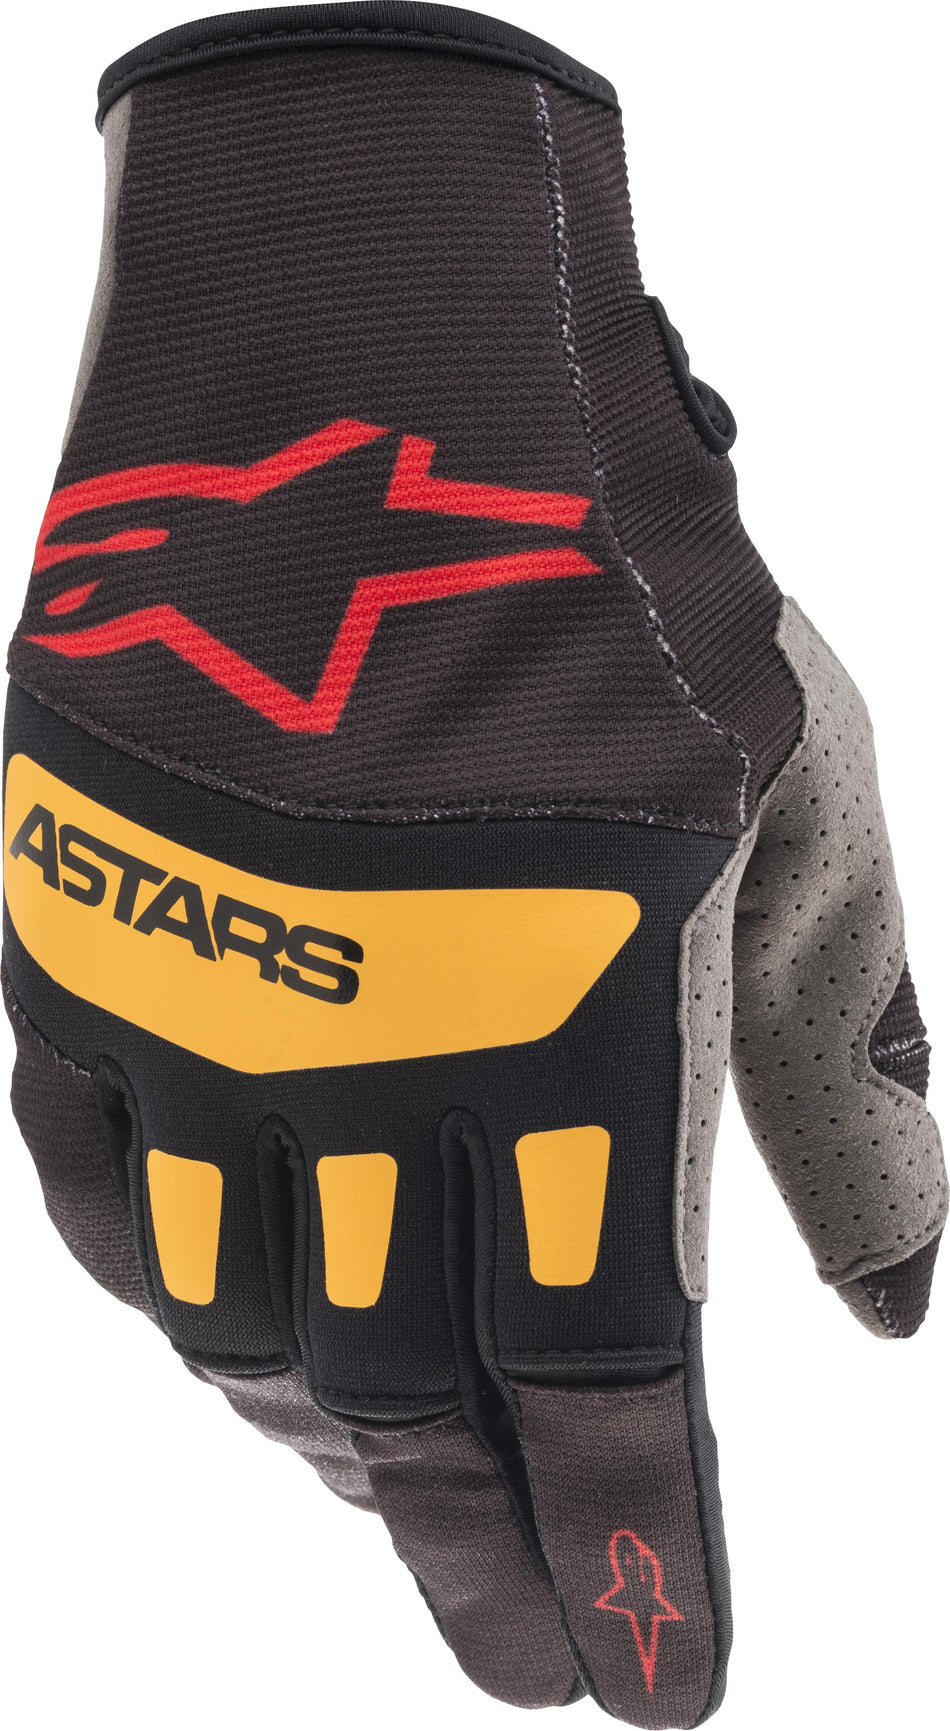 ALPINESTARS Techstar Gloves Black/Bright Red/Orange 2x 3561021-1344-2XL